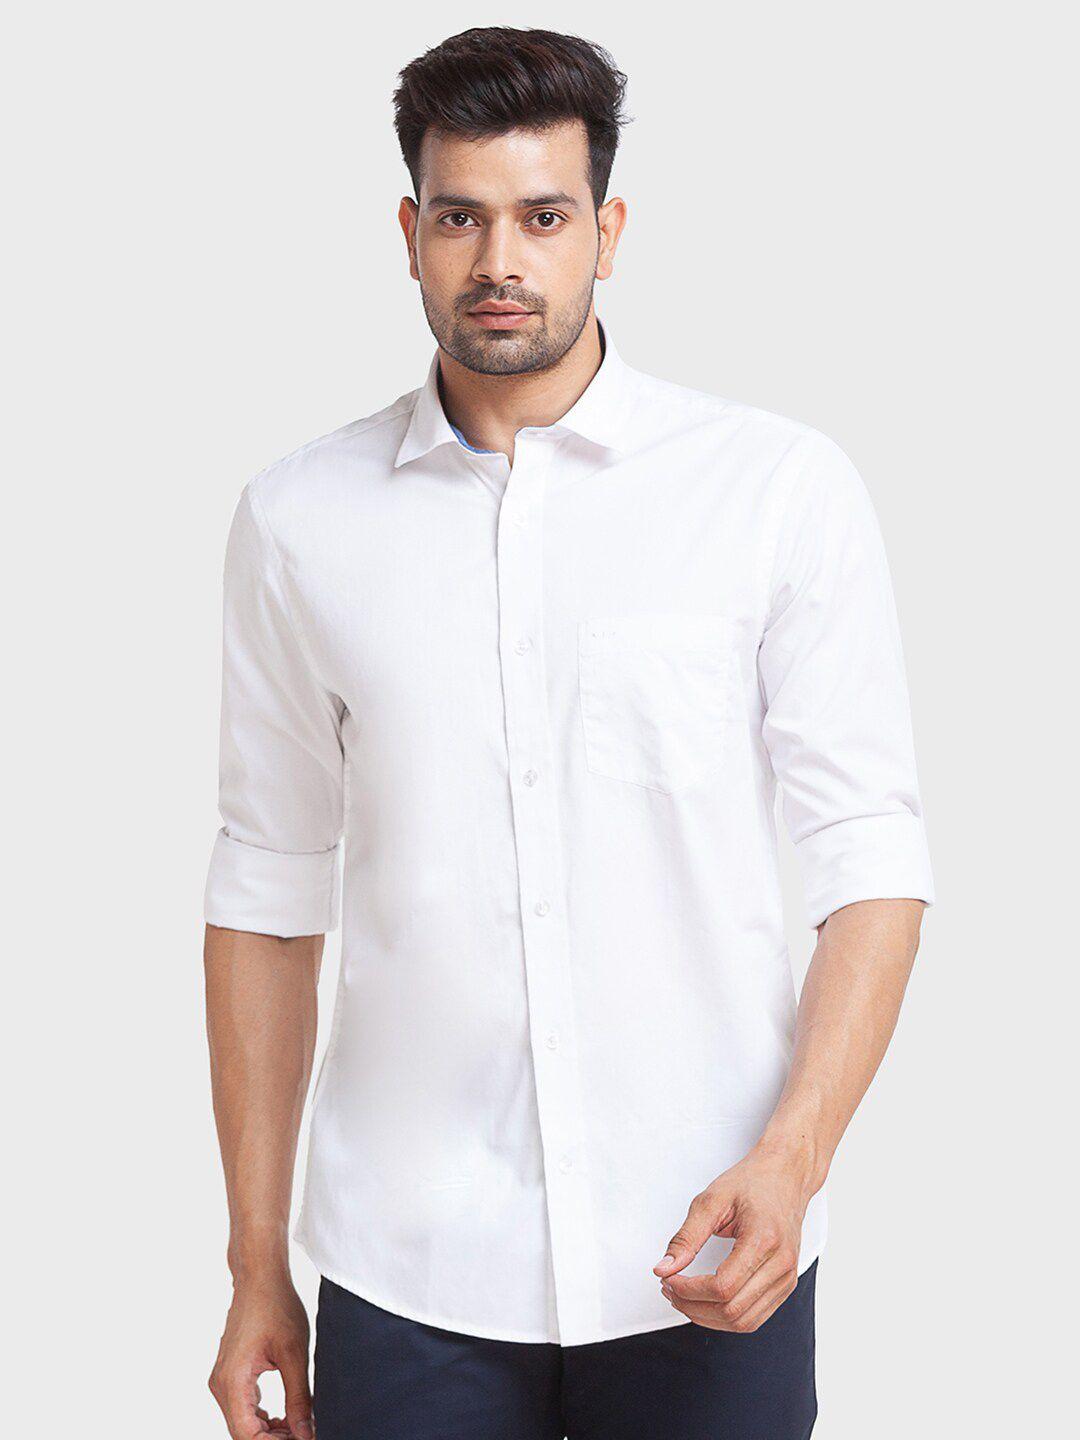 colorplus-men-tailored-fit-cotton-casual-shirt